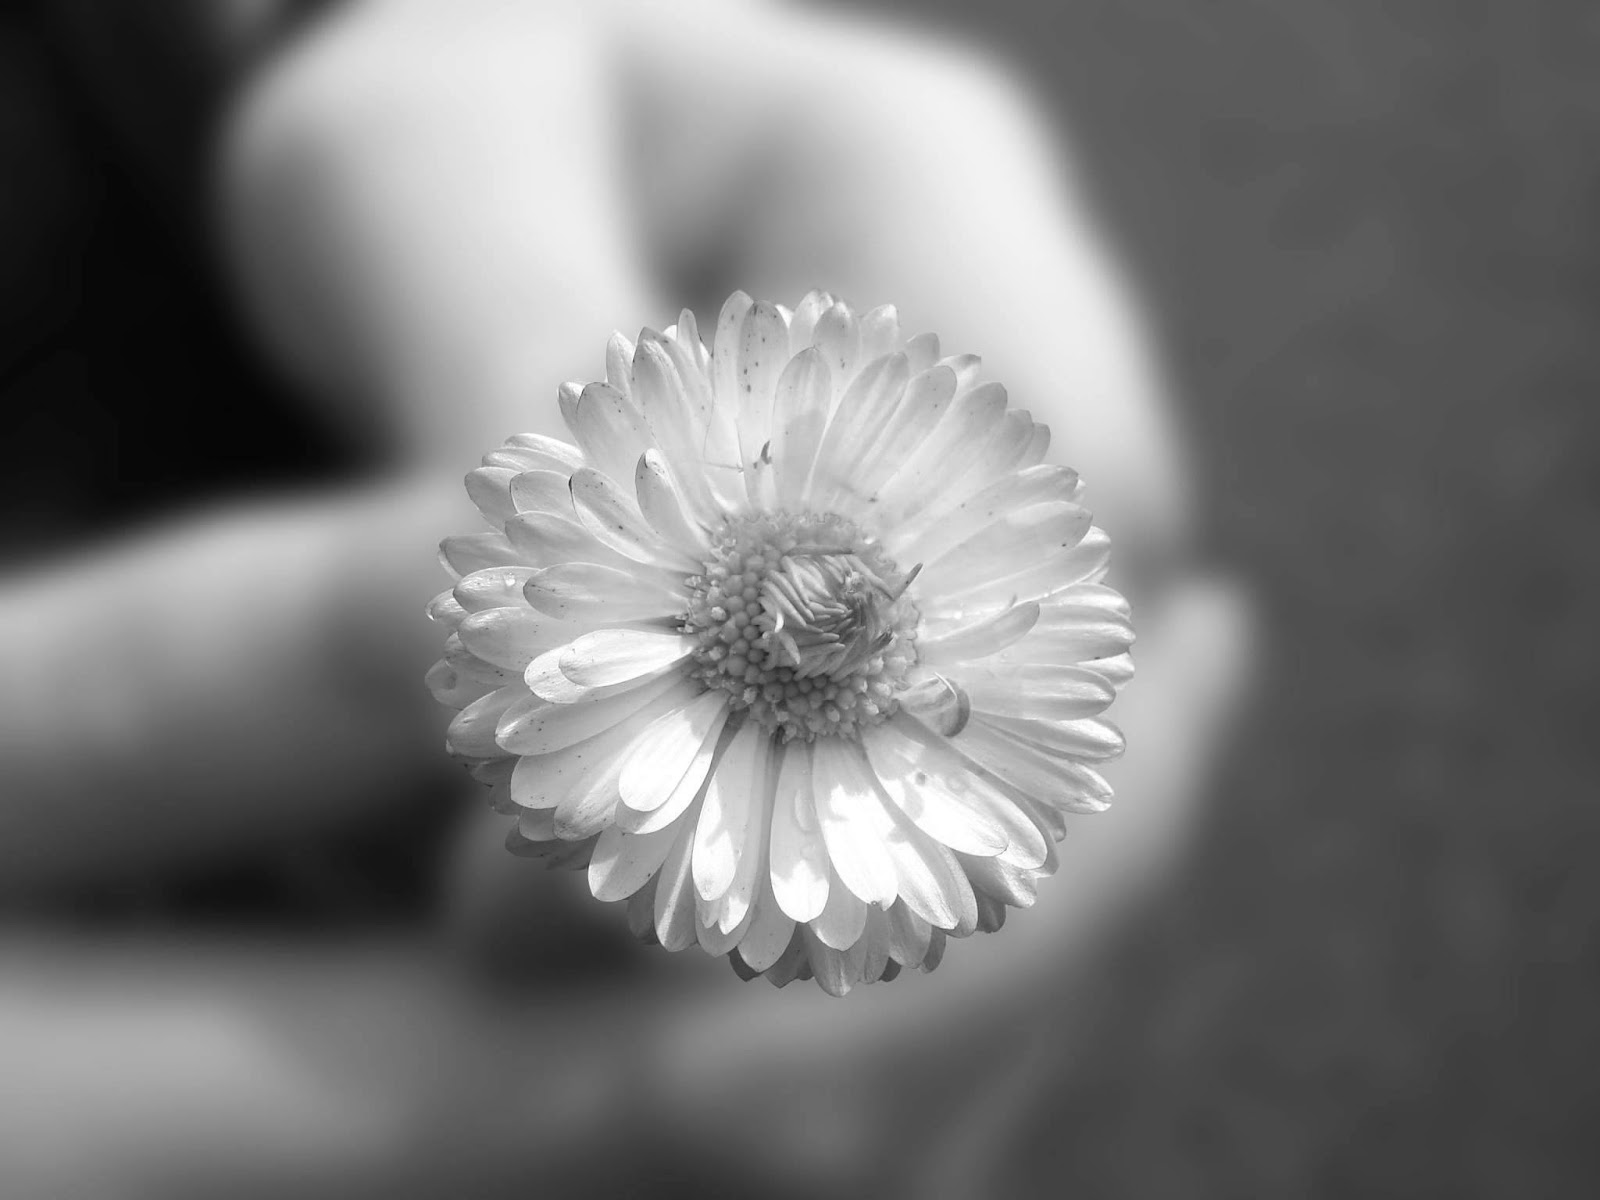 schwarzweiss blumentapete,weiß,monochrome fotografie,schwarz und weiß,blütenblatt,blume